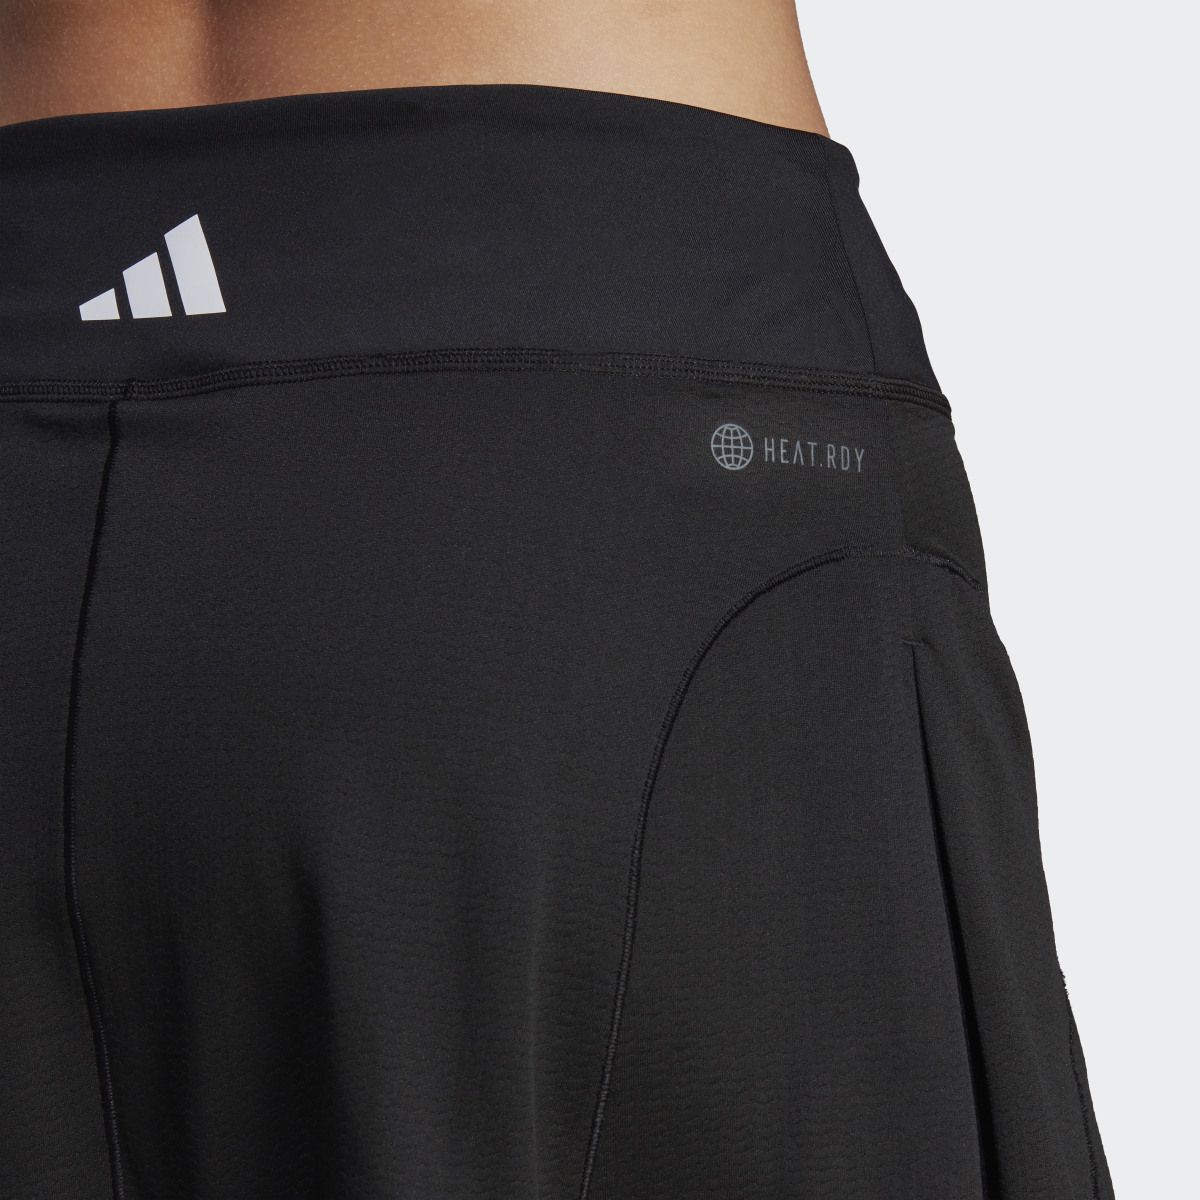 Adidas Tennis Match Skirt. 7